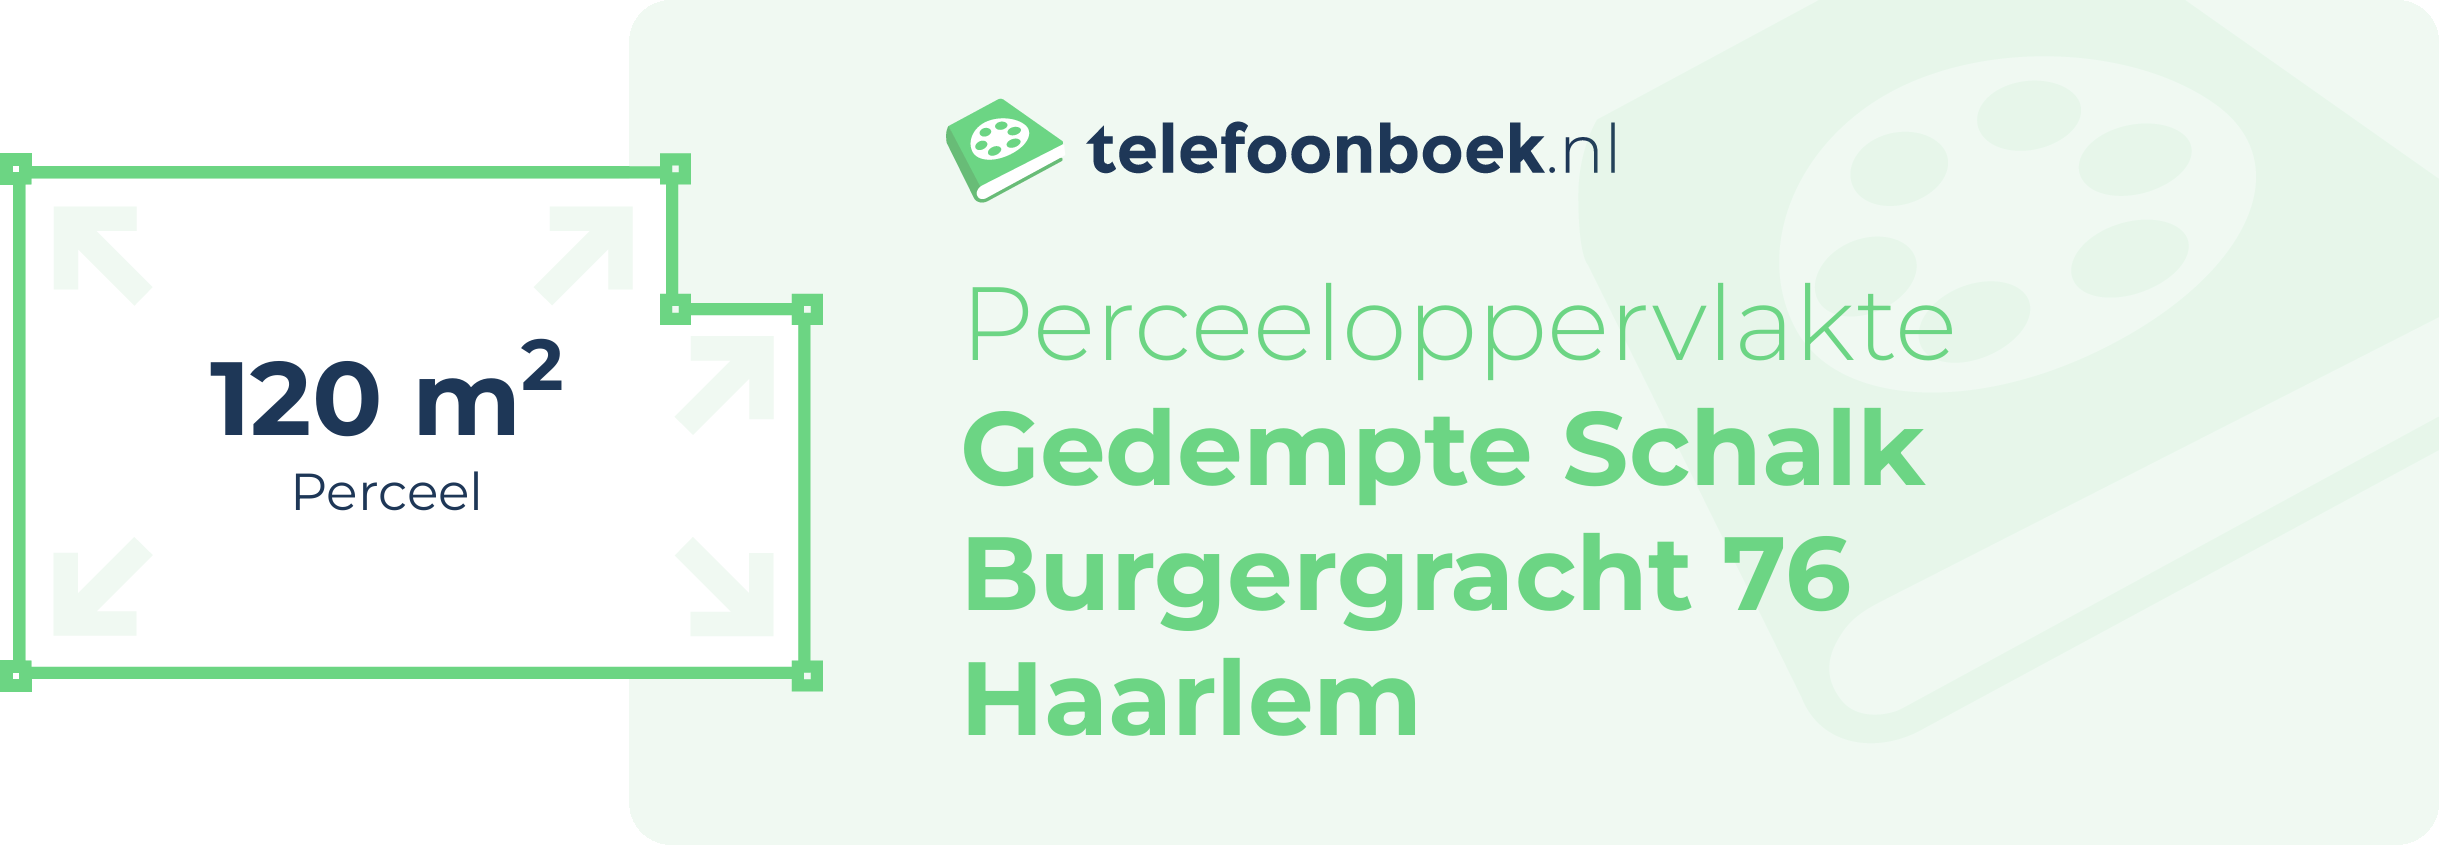 Perceeloppervlakte Gedempte Schalk Burgergracht 76 Haarlem